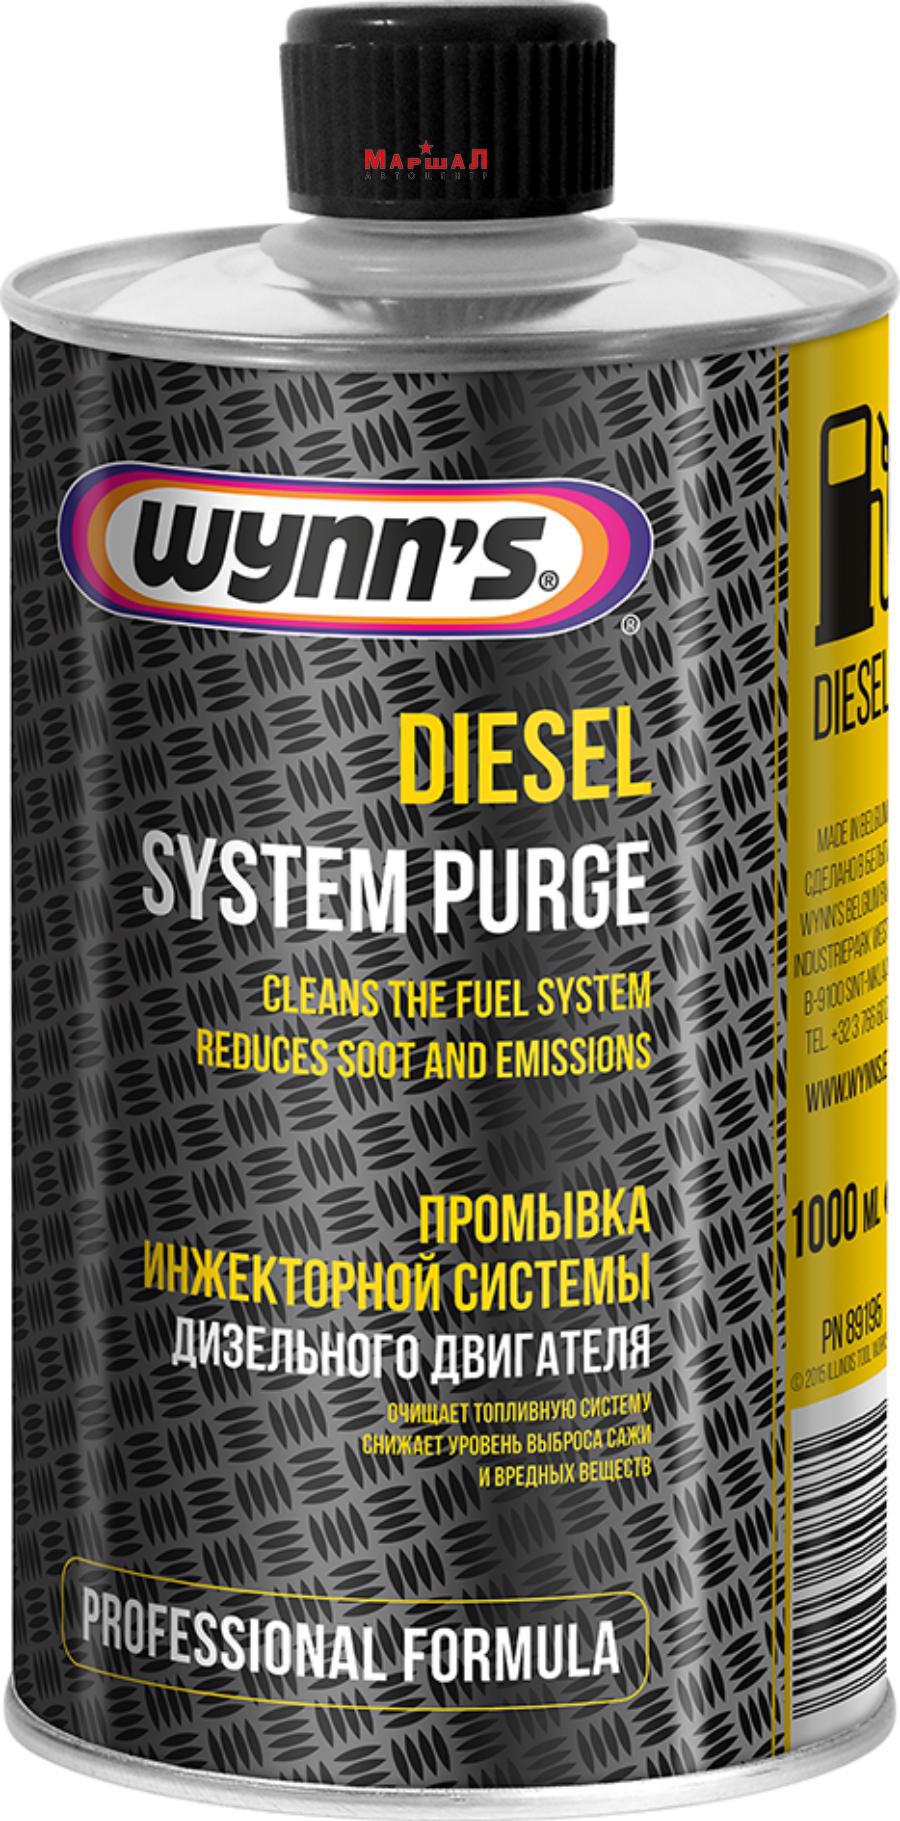 W89195 WYNN*S Diesel System Purge (очиститель дизельных топливных сиситем) 1L PN89195